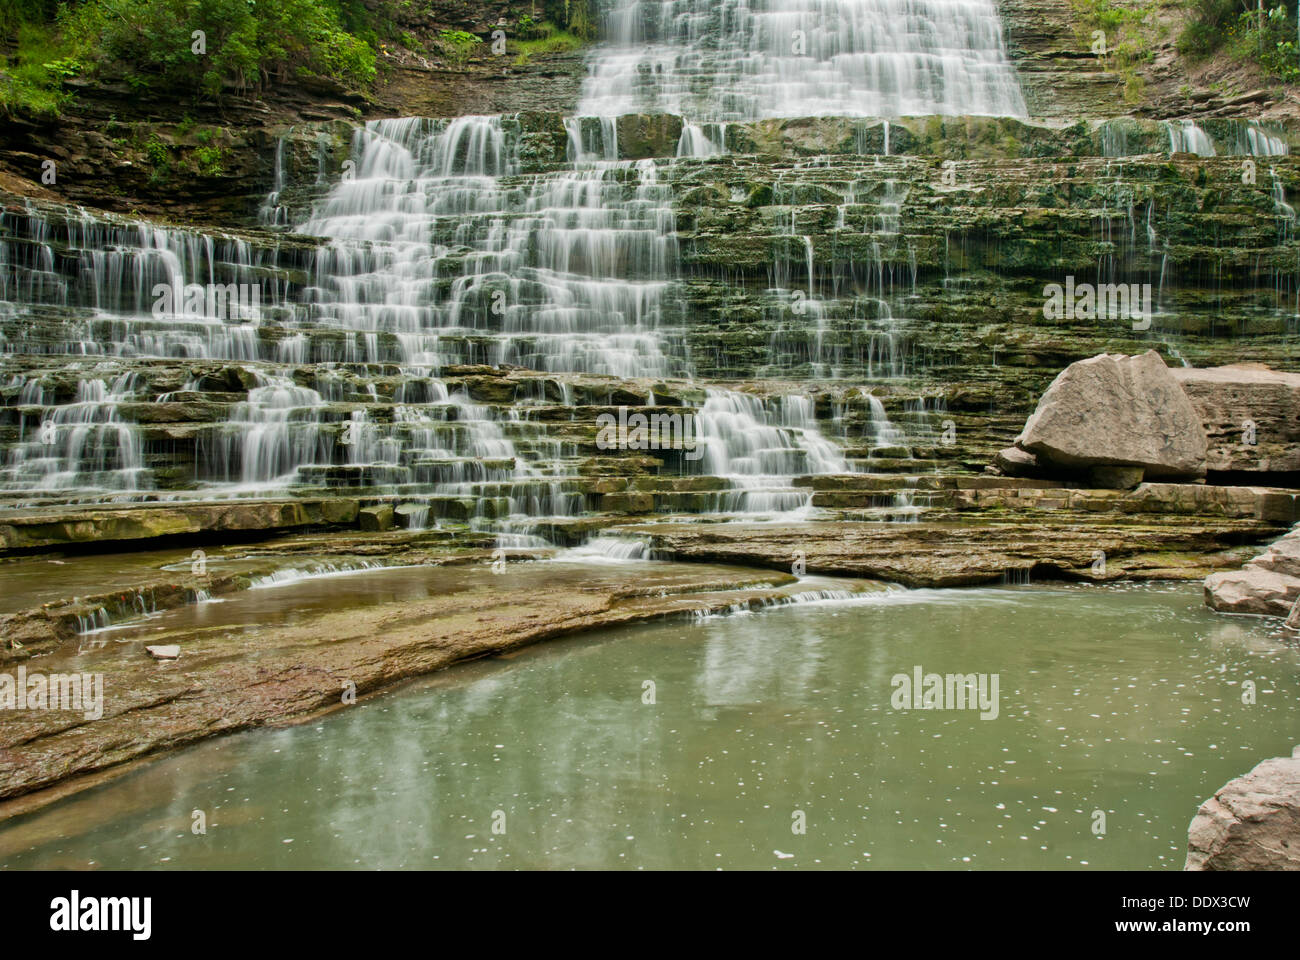 Weitwinkel-Blick auf einen malerischen Wasserfall Typ Wasserfall, präsentiert mit einer langen Belichtungszeit Stockfoto